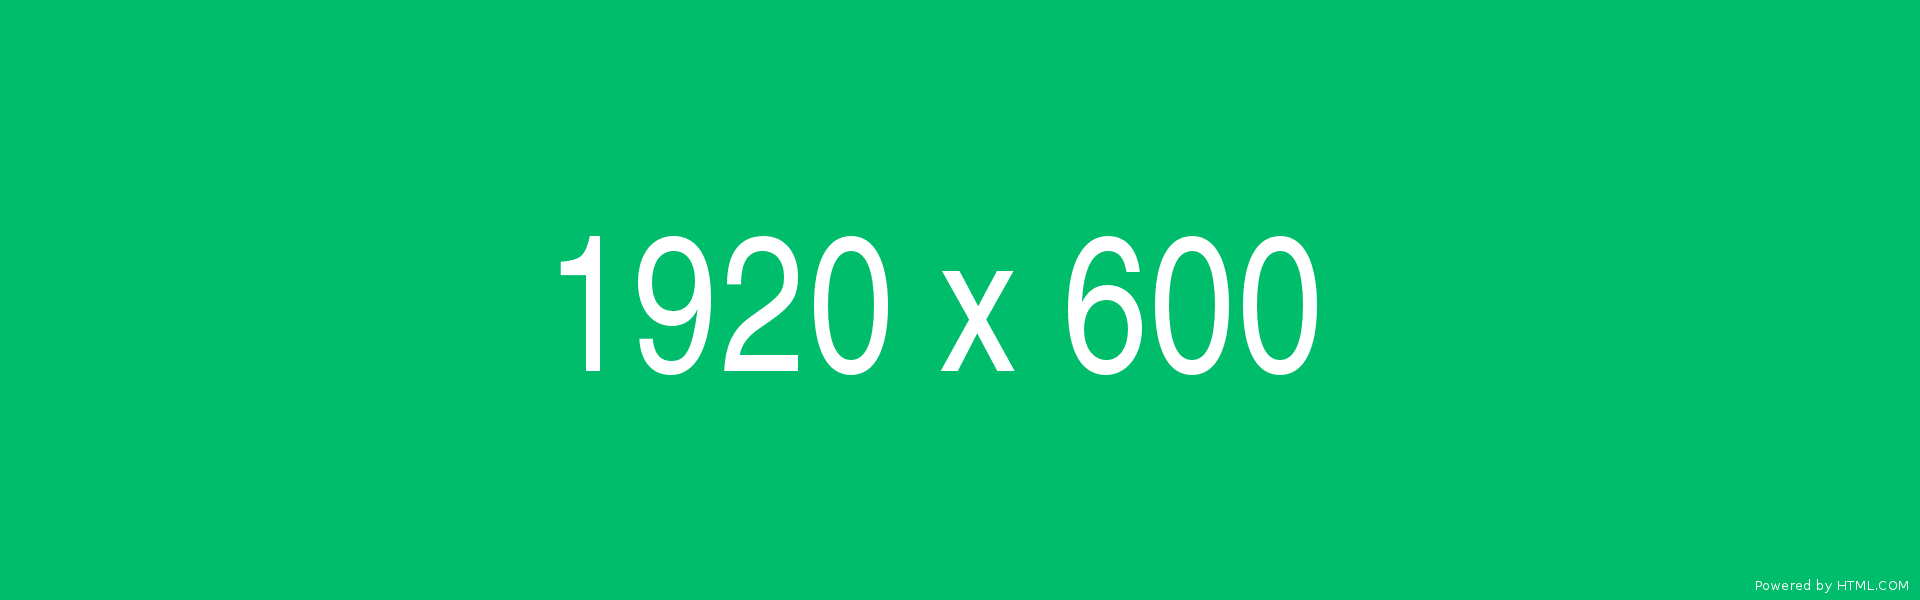 1920x600